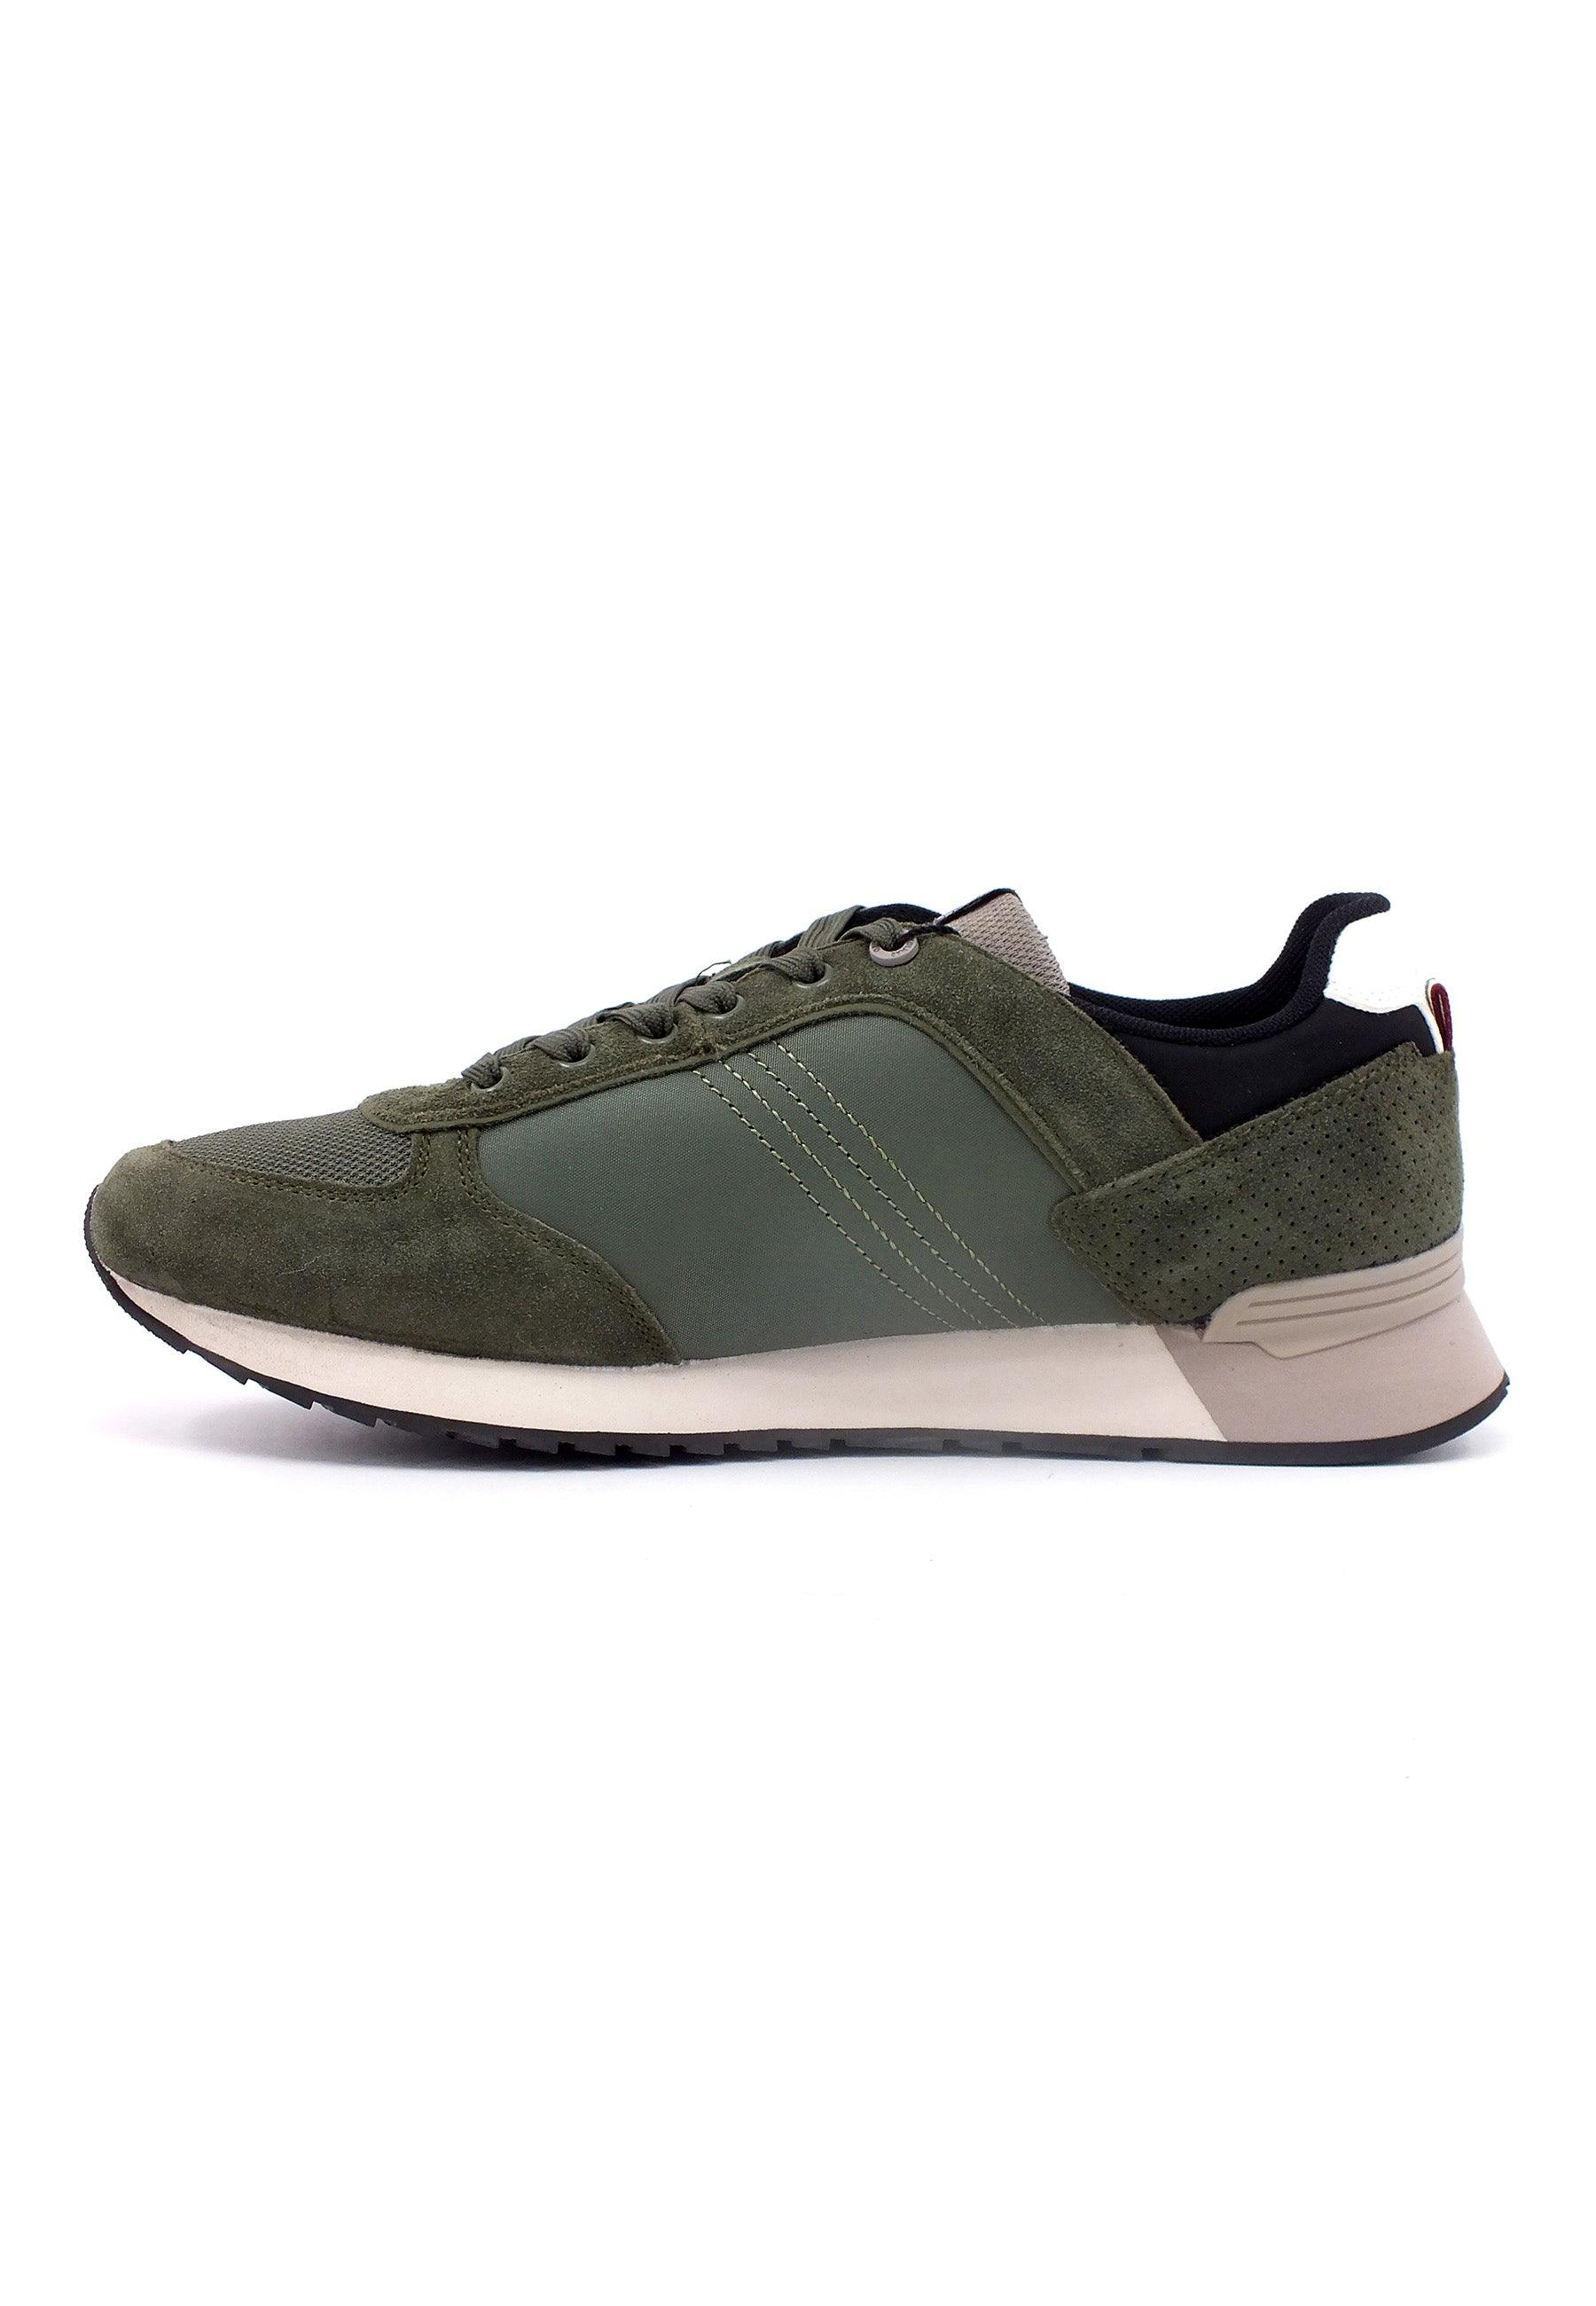 COLMAR Sneaker Uomo Military Green TRAVIS-AUTHENTIC - Sandrini Calzature e Abbigliamento